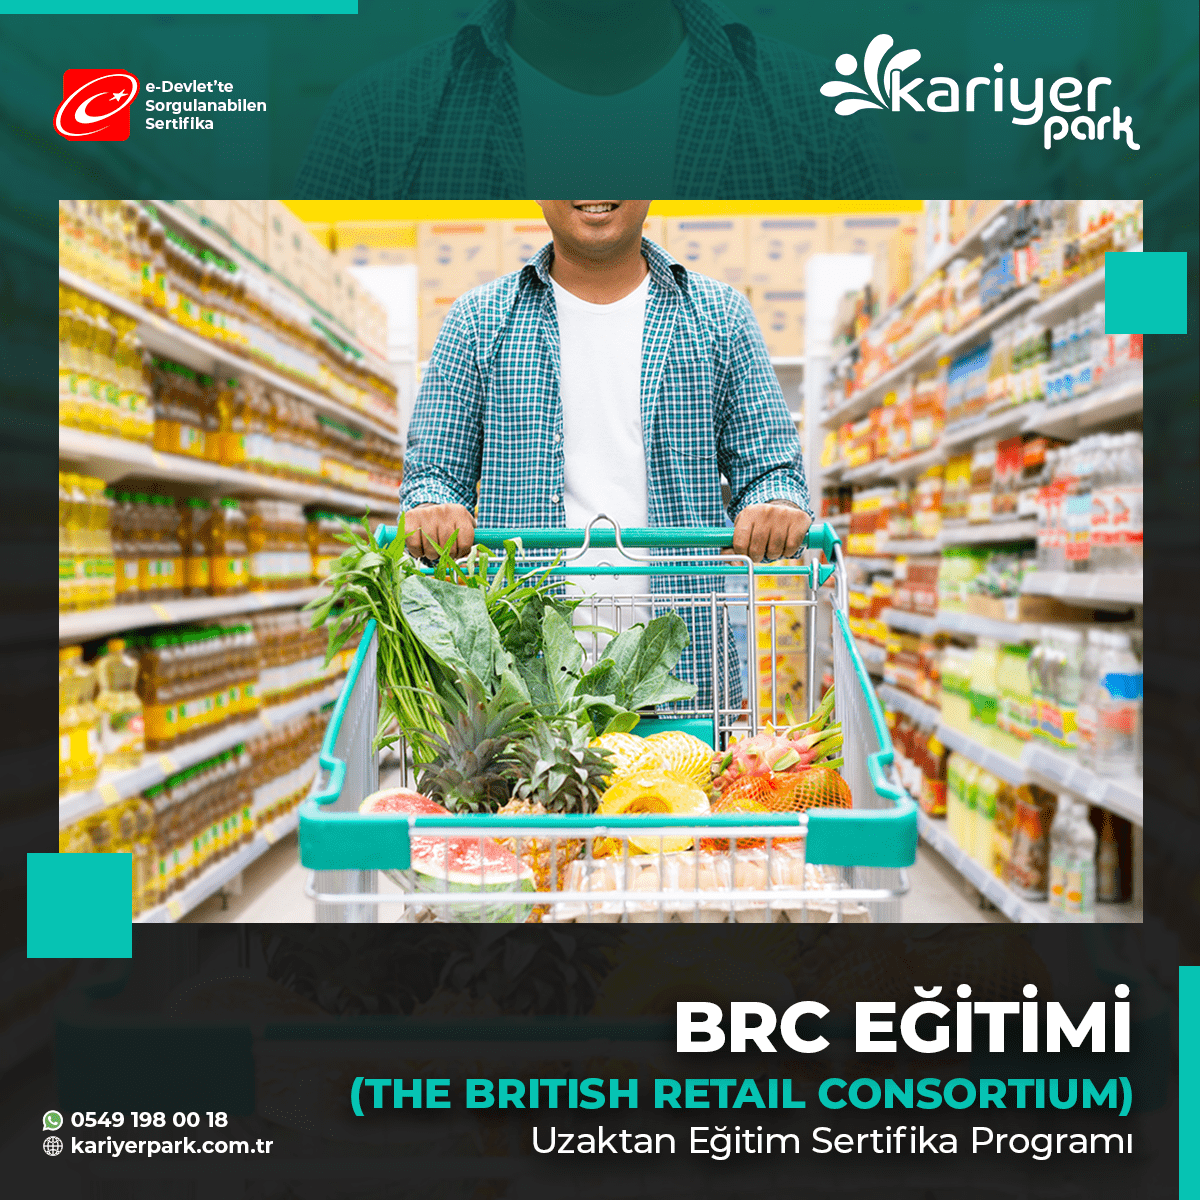 Gıda üretim tesislerinde minimum hijyen standardının sağlanması amacıyla BRC büyük İngiliz perakendecileriyle “BRC- Gıda Standardını” yayınladı.